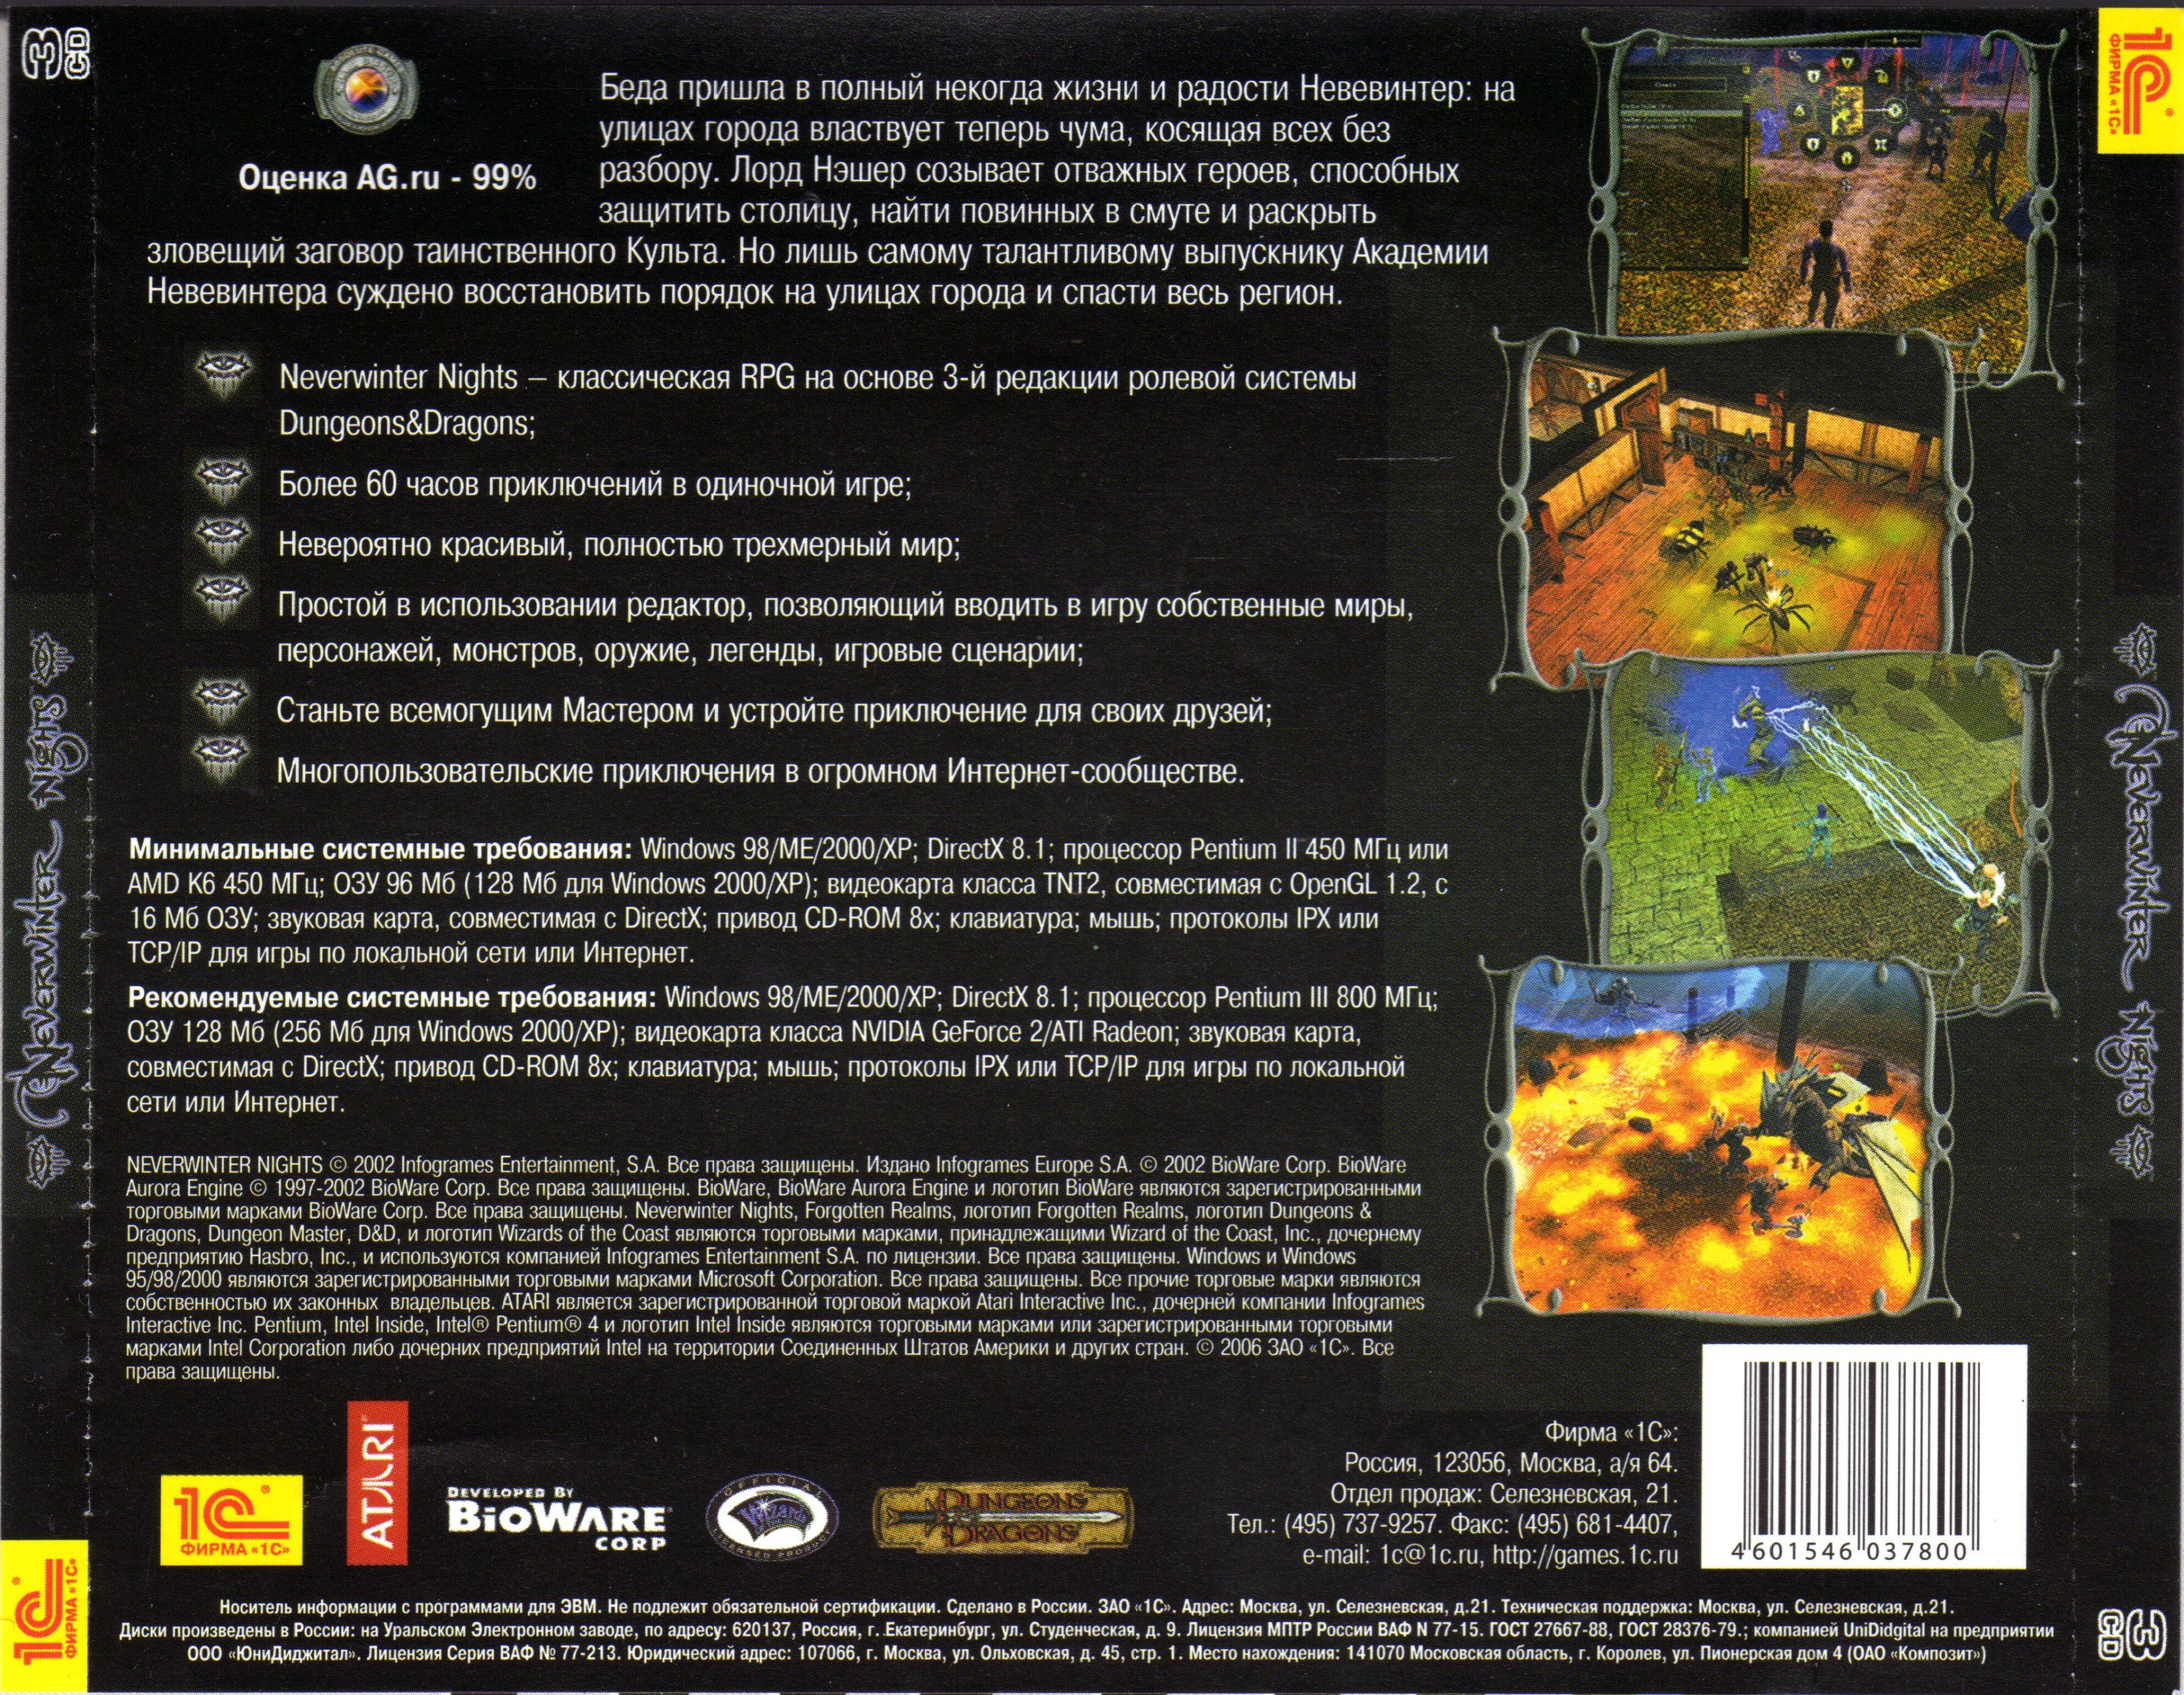 Сценарий игр для 8 класса. Neverwinter Nights обложка игры. Neverwinter Nights обложки дисков. Neverwinter Nights обложки дисков 2002. Neverwinter Nights игра 1991 список компьютерных игр Dungeons Dragons.